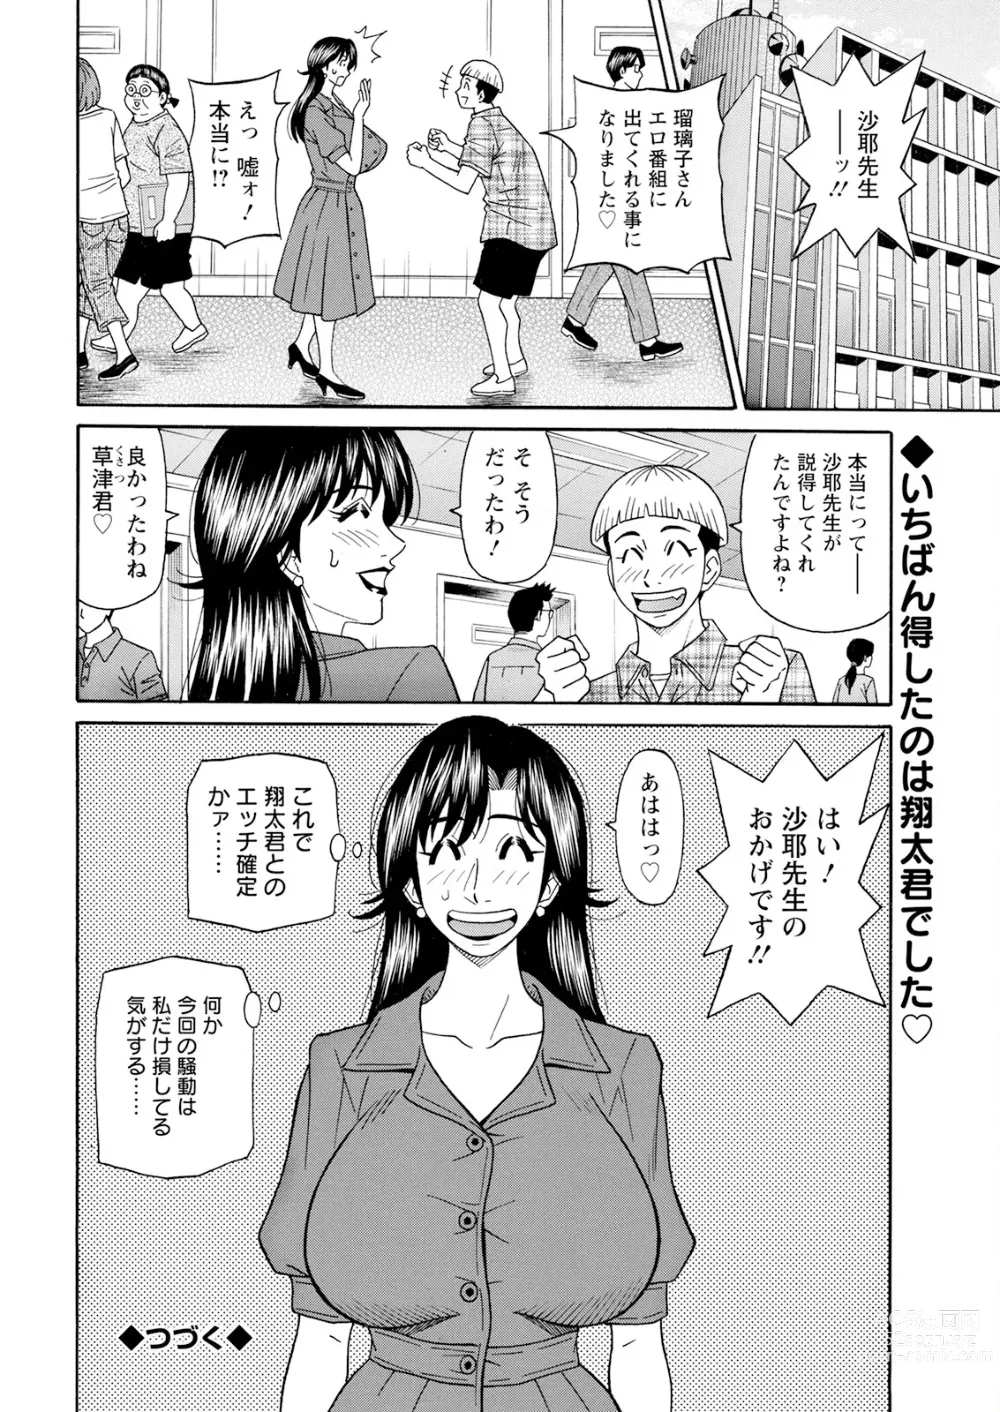 Page 368 of manga Action Pizazz 2023-09